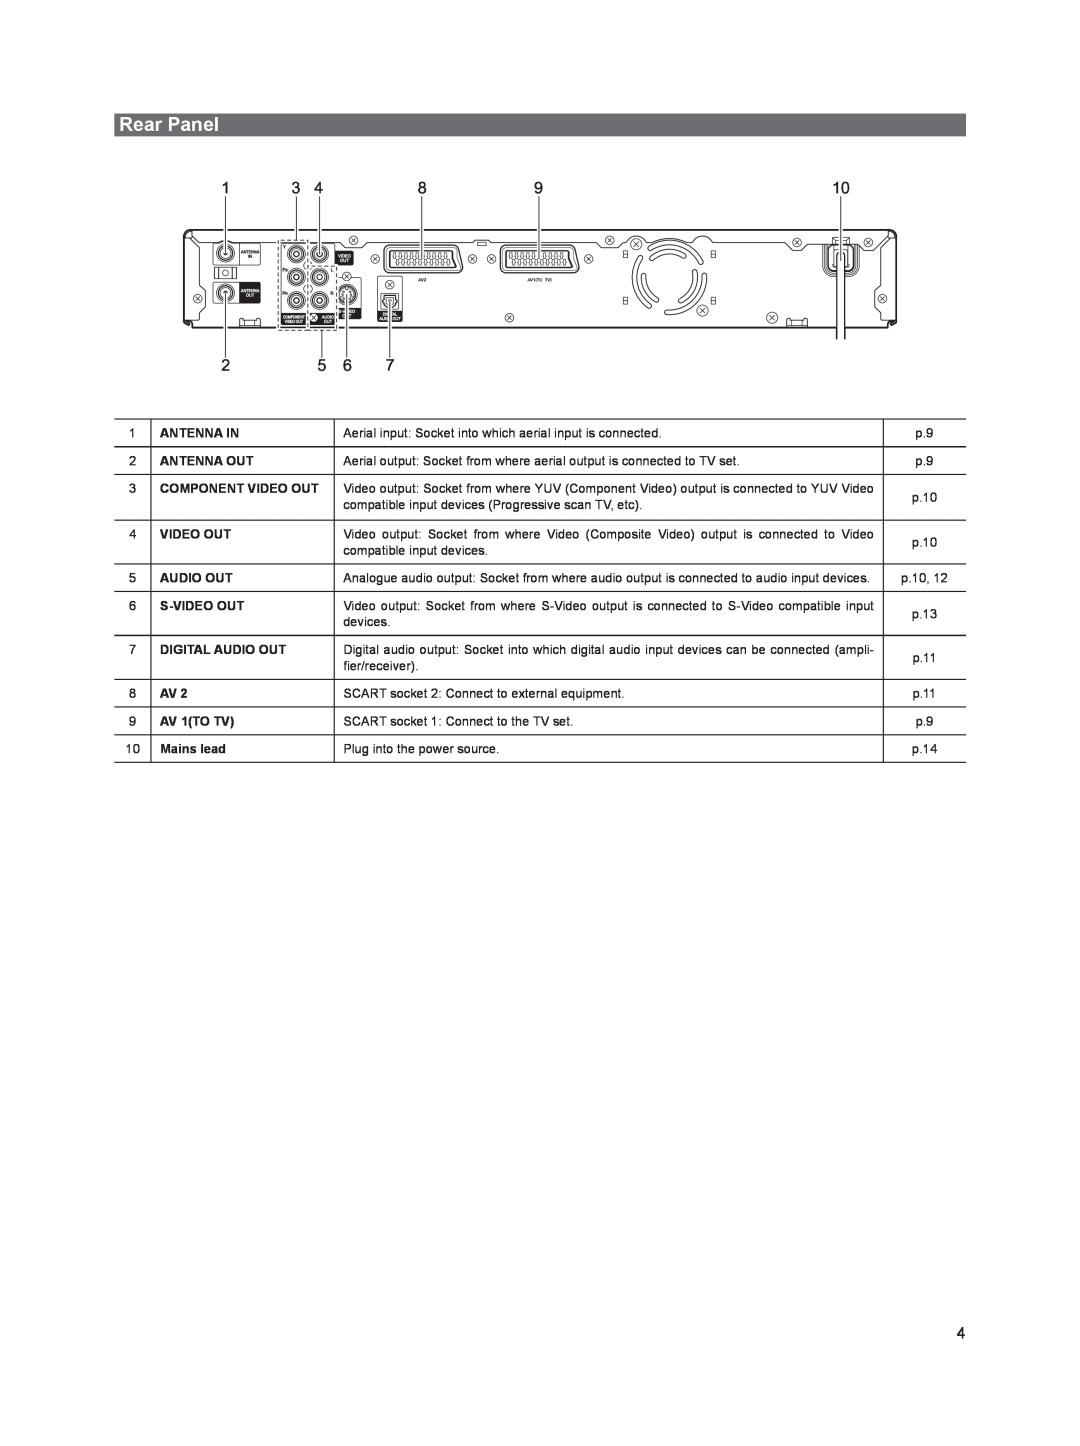 Sanyo DVR-HT120 instruction manual Rear Panel 